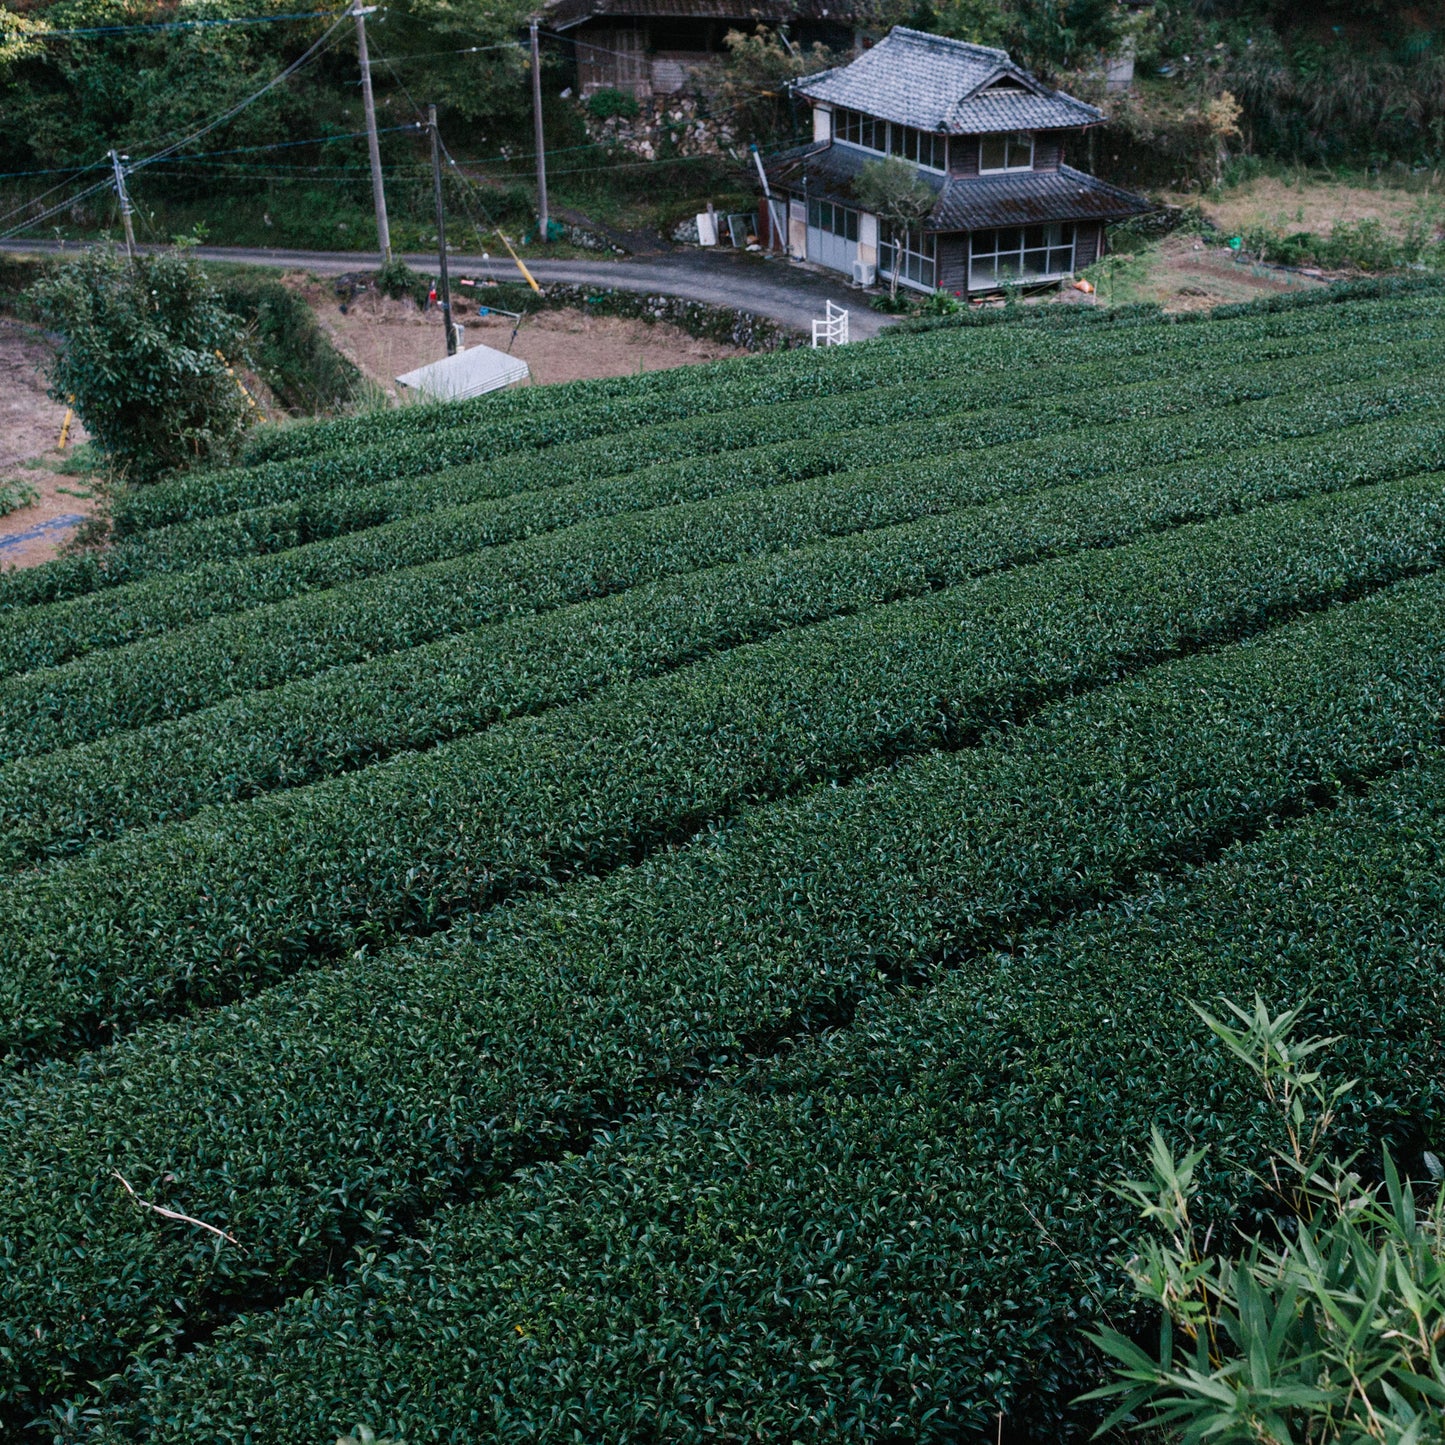 BROO - Craft Tea from Japan. Single-origin, small-batch, pesticide-free